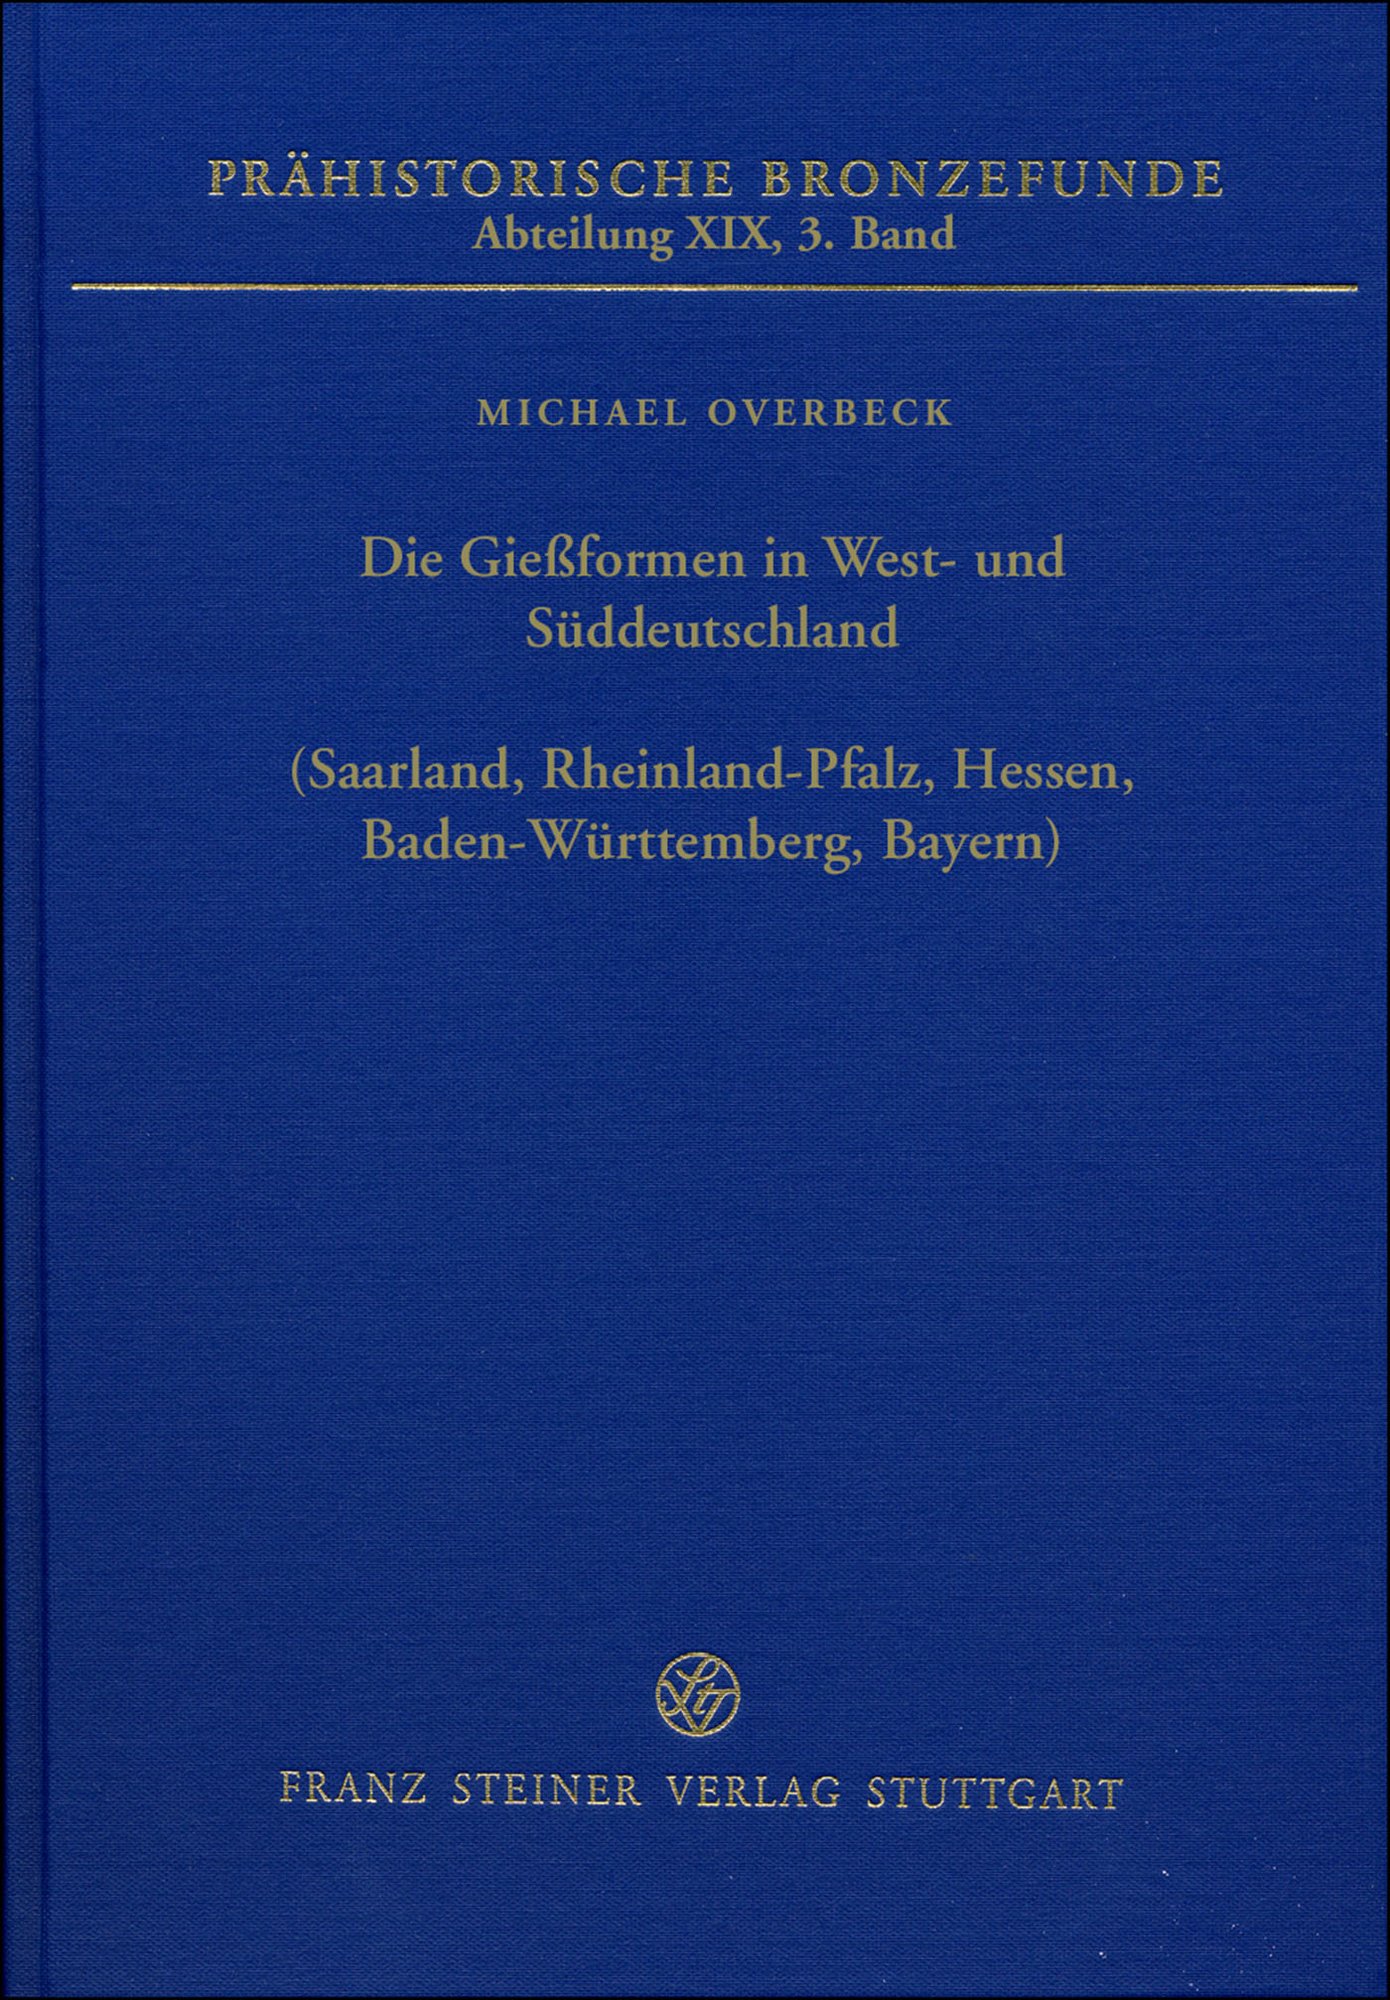 Die Gießformen in West- und Süddeutschland (Saarland, Rheinland-Pfalz, Hessen, Baden-Württemberg, Bayern)